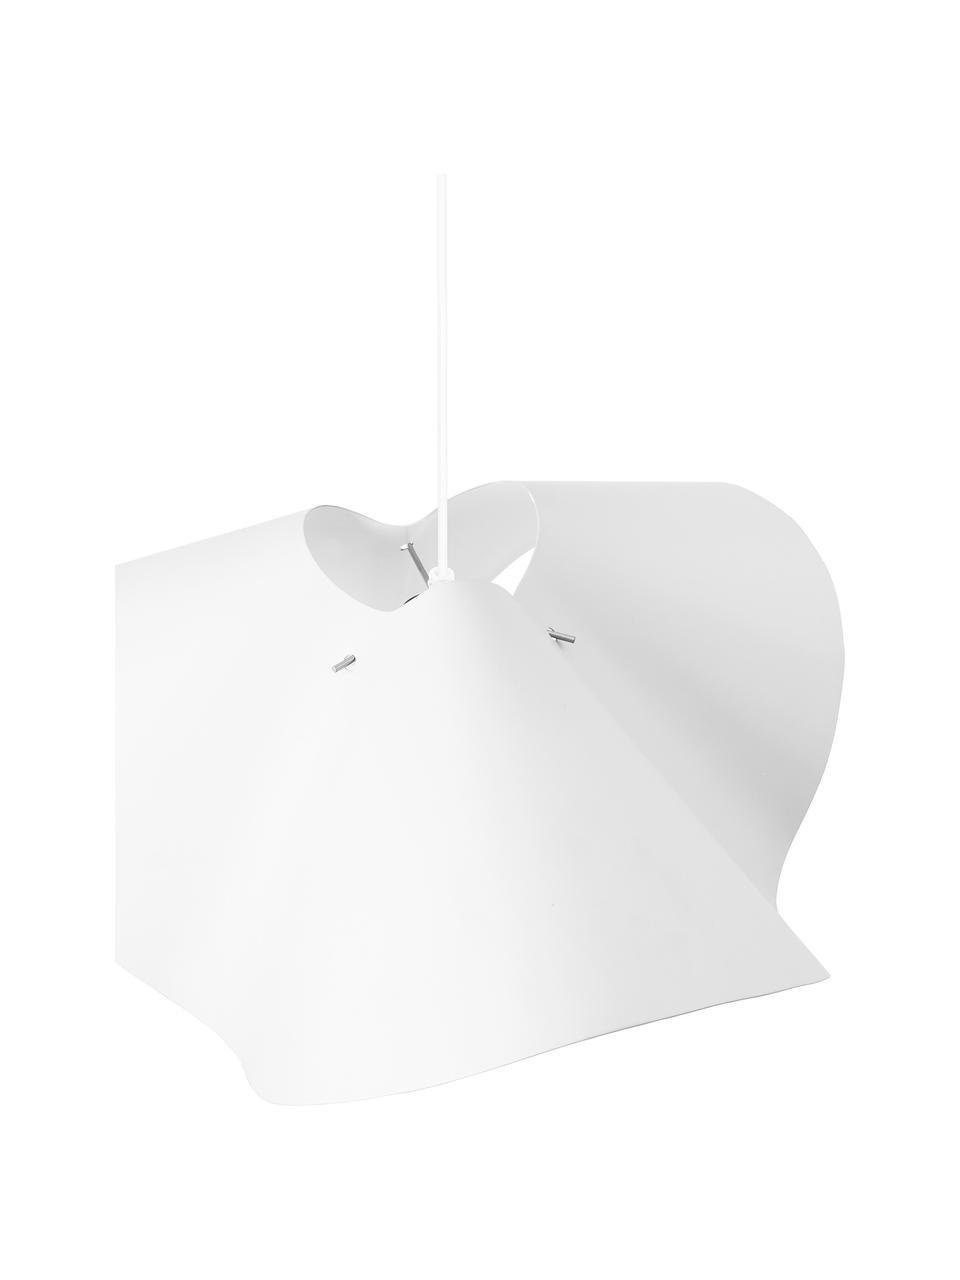 Lampa wisząca Volang, Biały, S 50 x W 21 cm